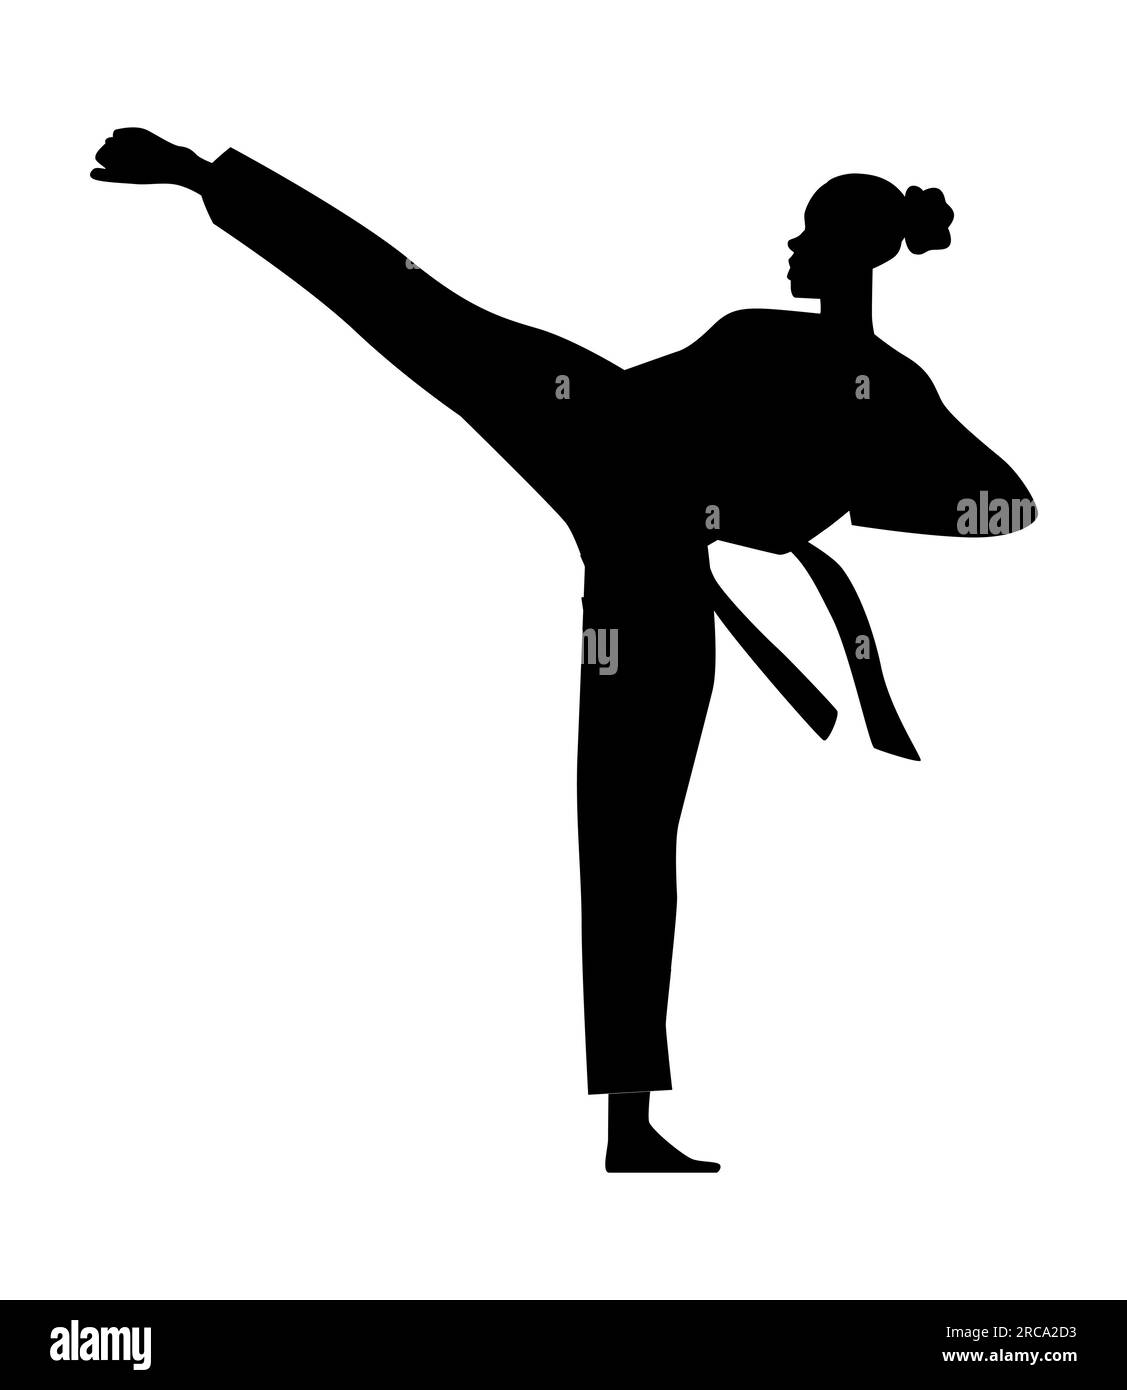 Silhouette noire d'une personne faisant la pratique du karaté dans une pose de coup de pied, classe d'arts martiaux, illustration vectorielle isolée sur fond blanc Illustration de Vecteur